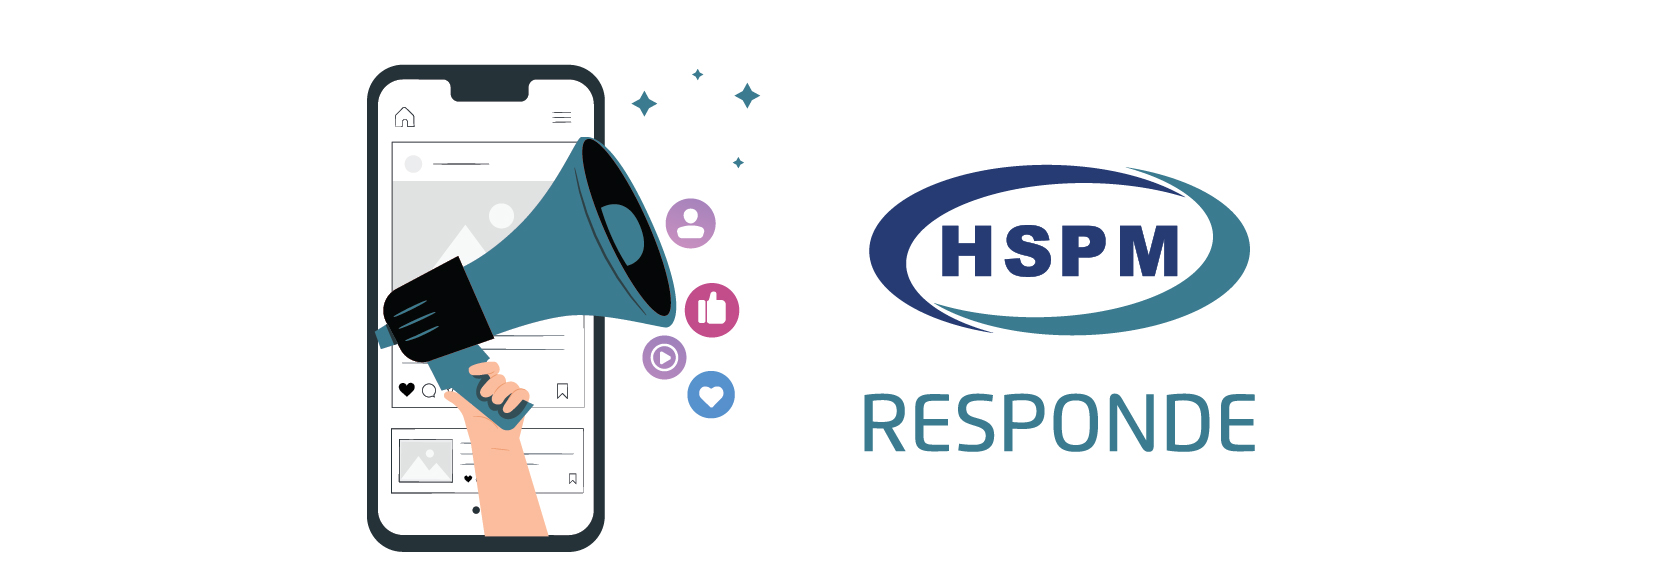 Ilustração da coluna HSPM Responde, com um megafone saindo de dentro de um celular ao lado do logo do HSPM